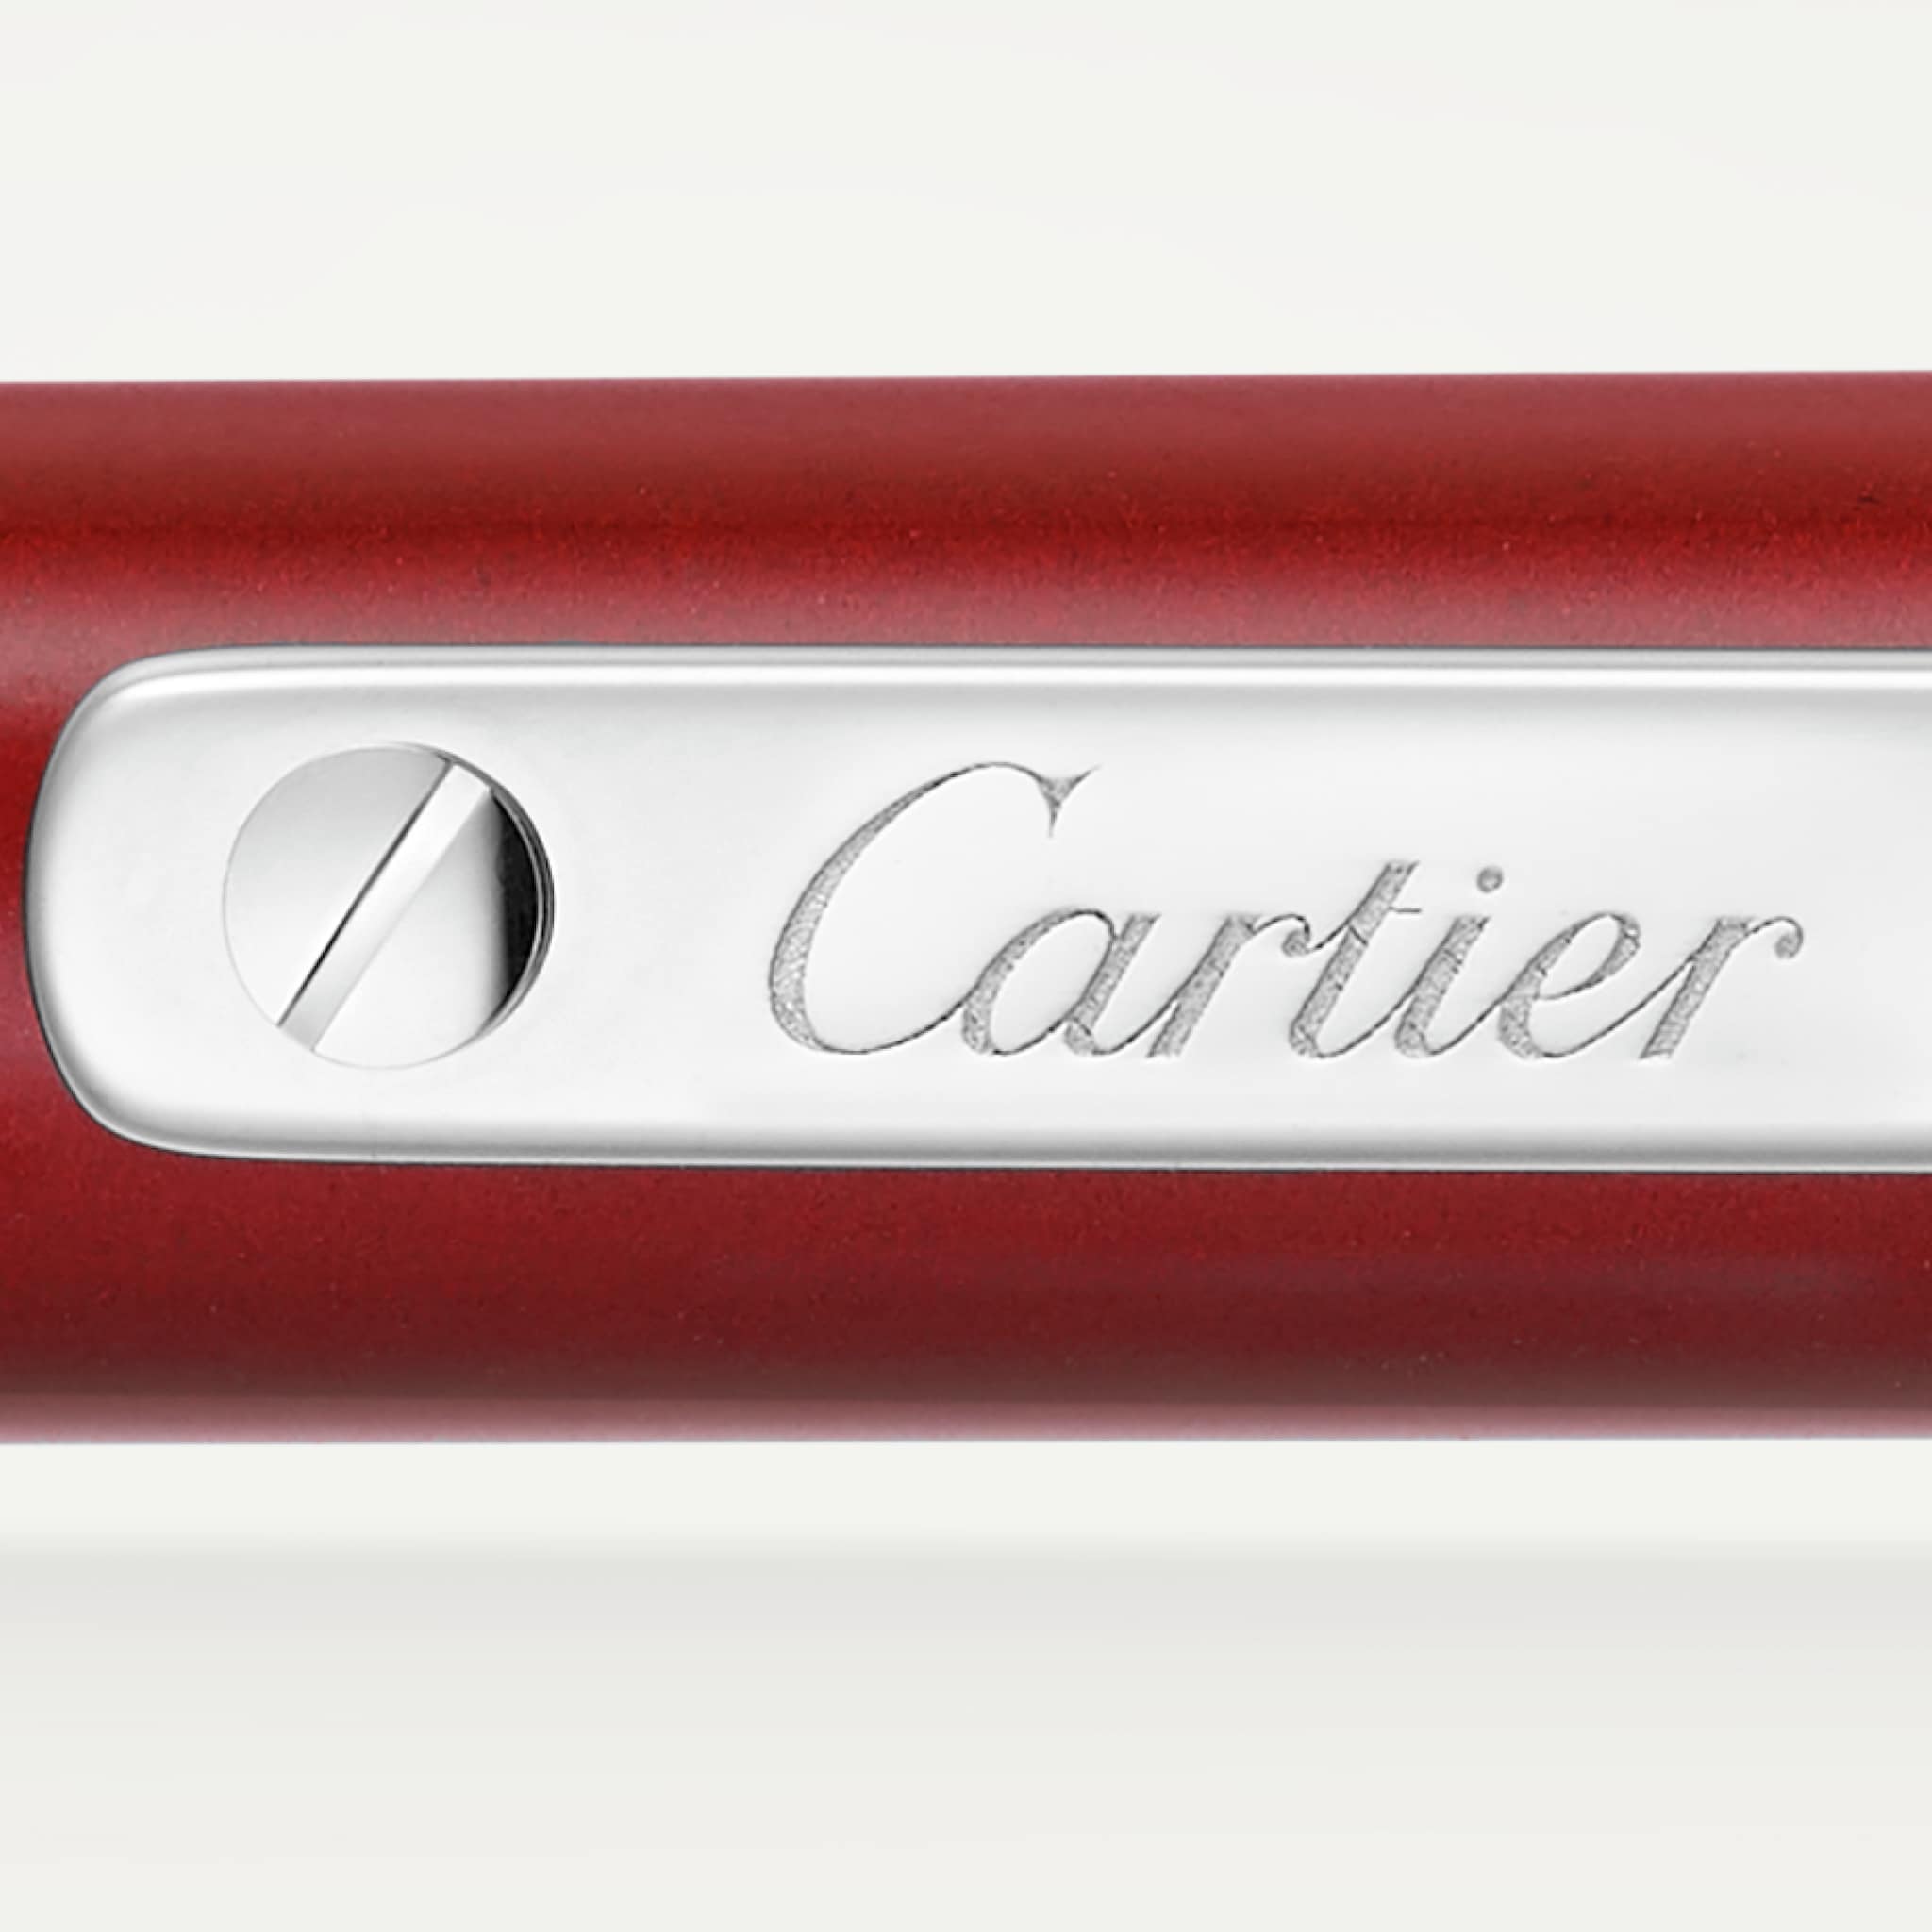 Santos de Cartier墨水笔小号款，红色亮漆，镀钯饰面